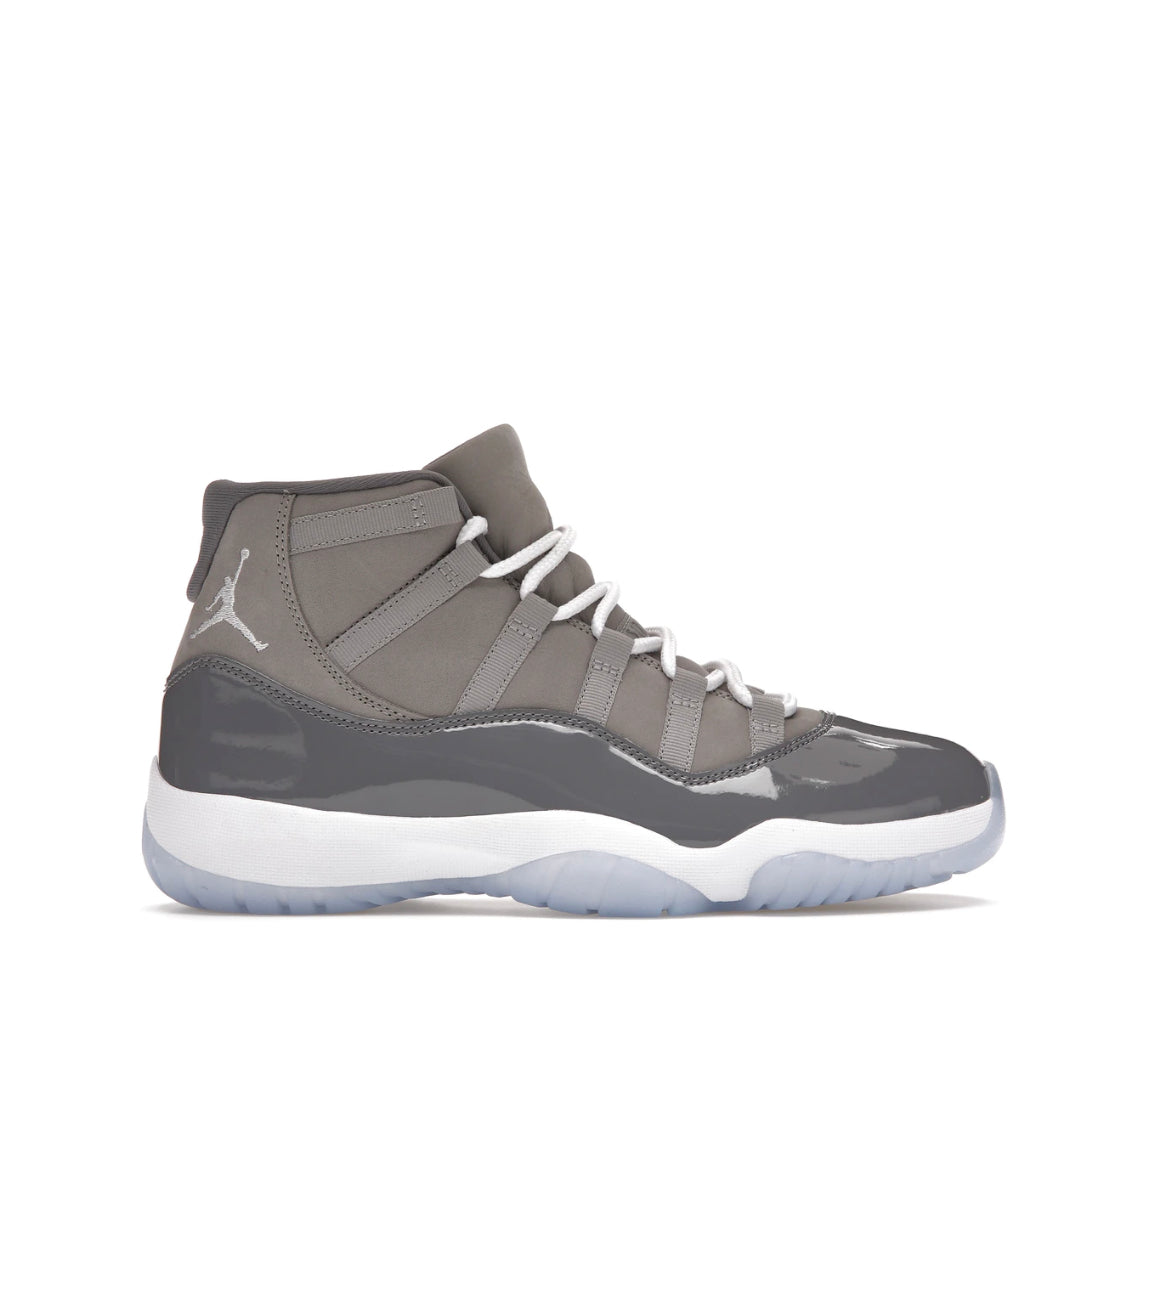 Jordan 11 Retro ‘Cool Grey’ CT8012-005